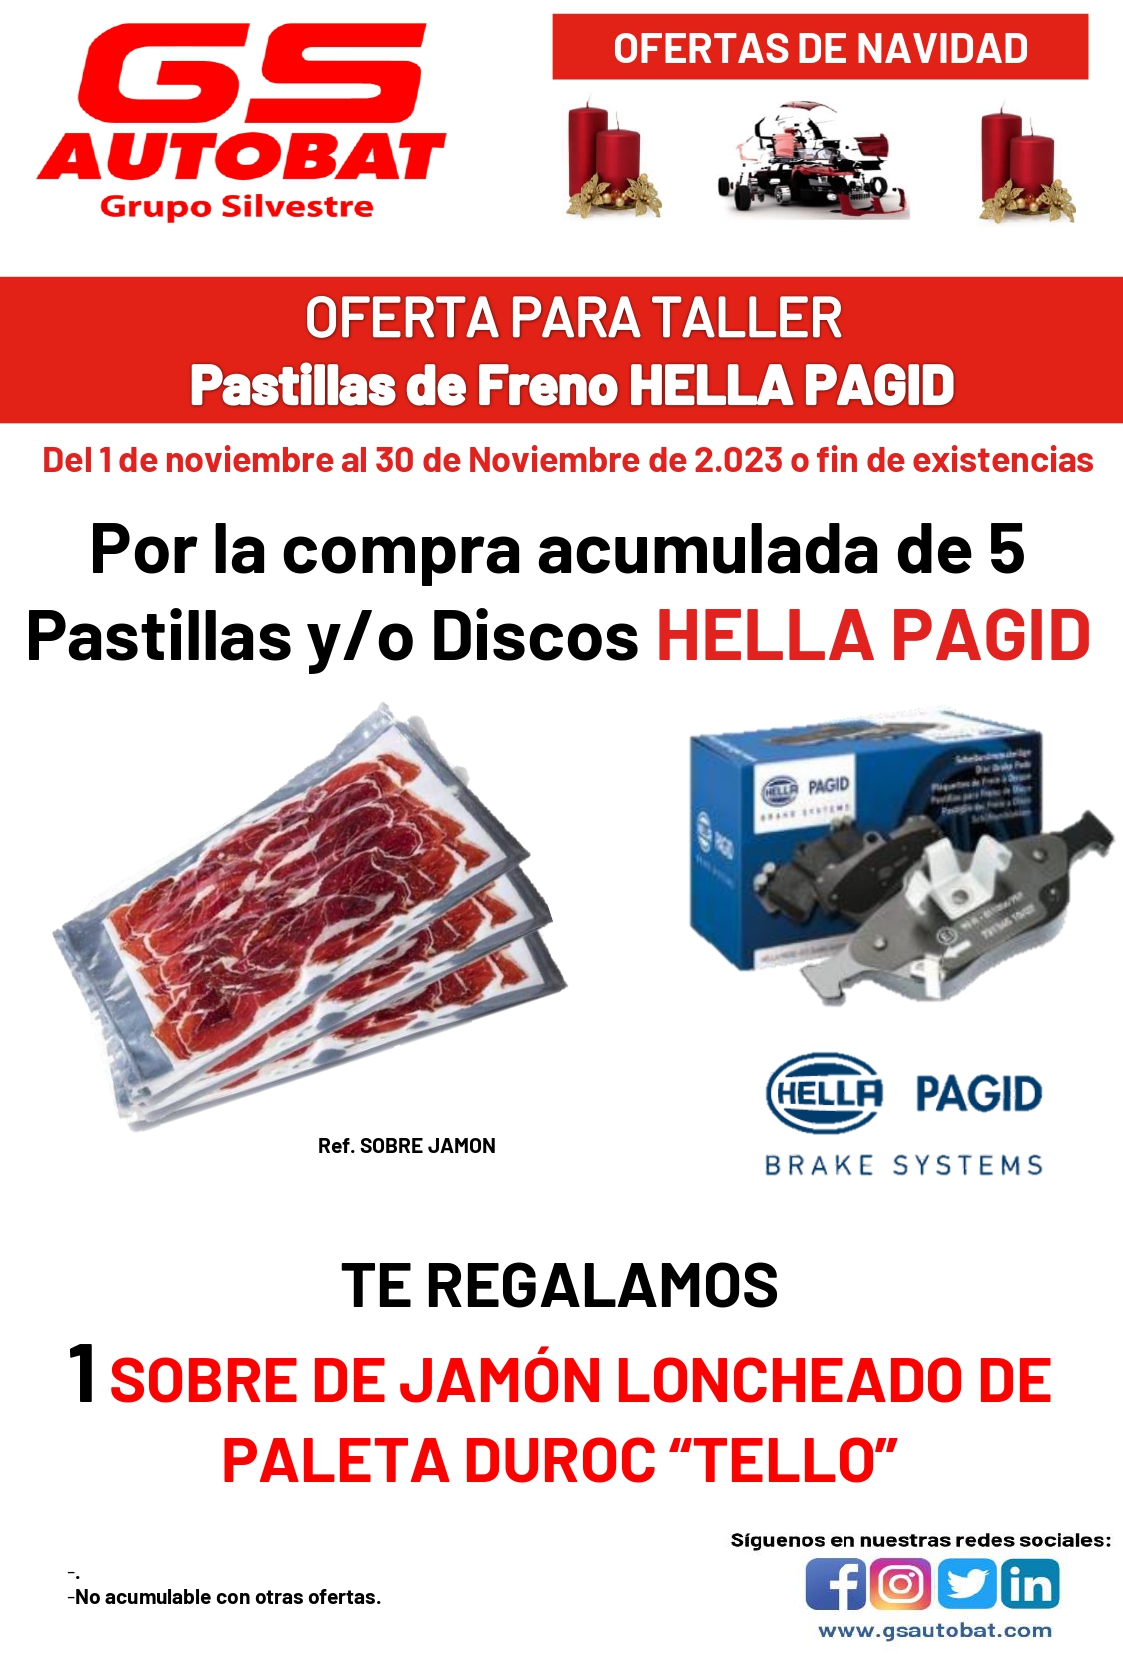 PASTILLAS Y DISCOS DE FRENO HELLA PAGID